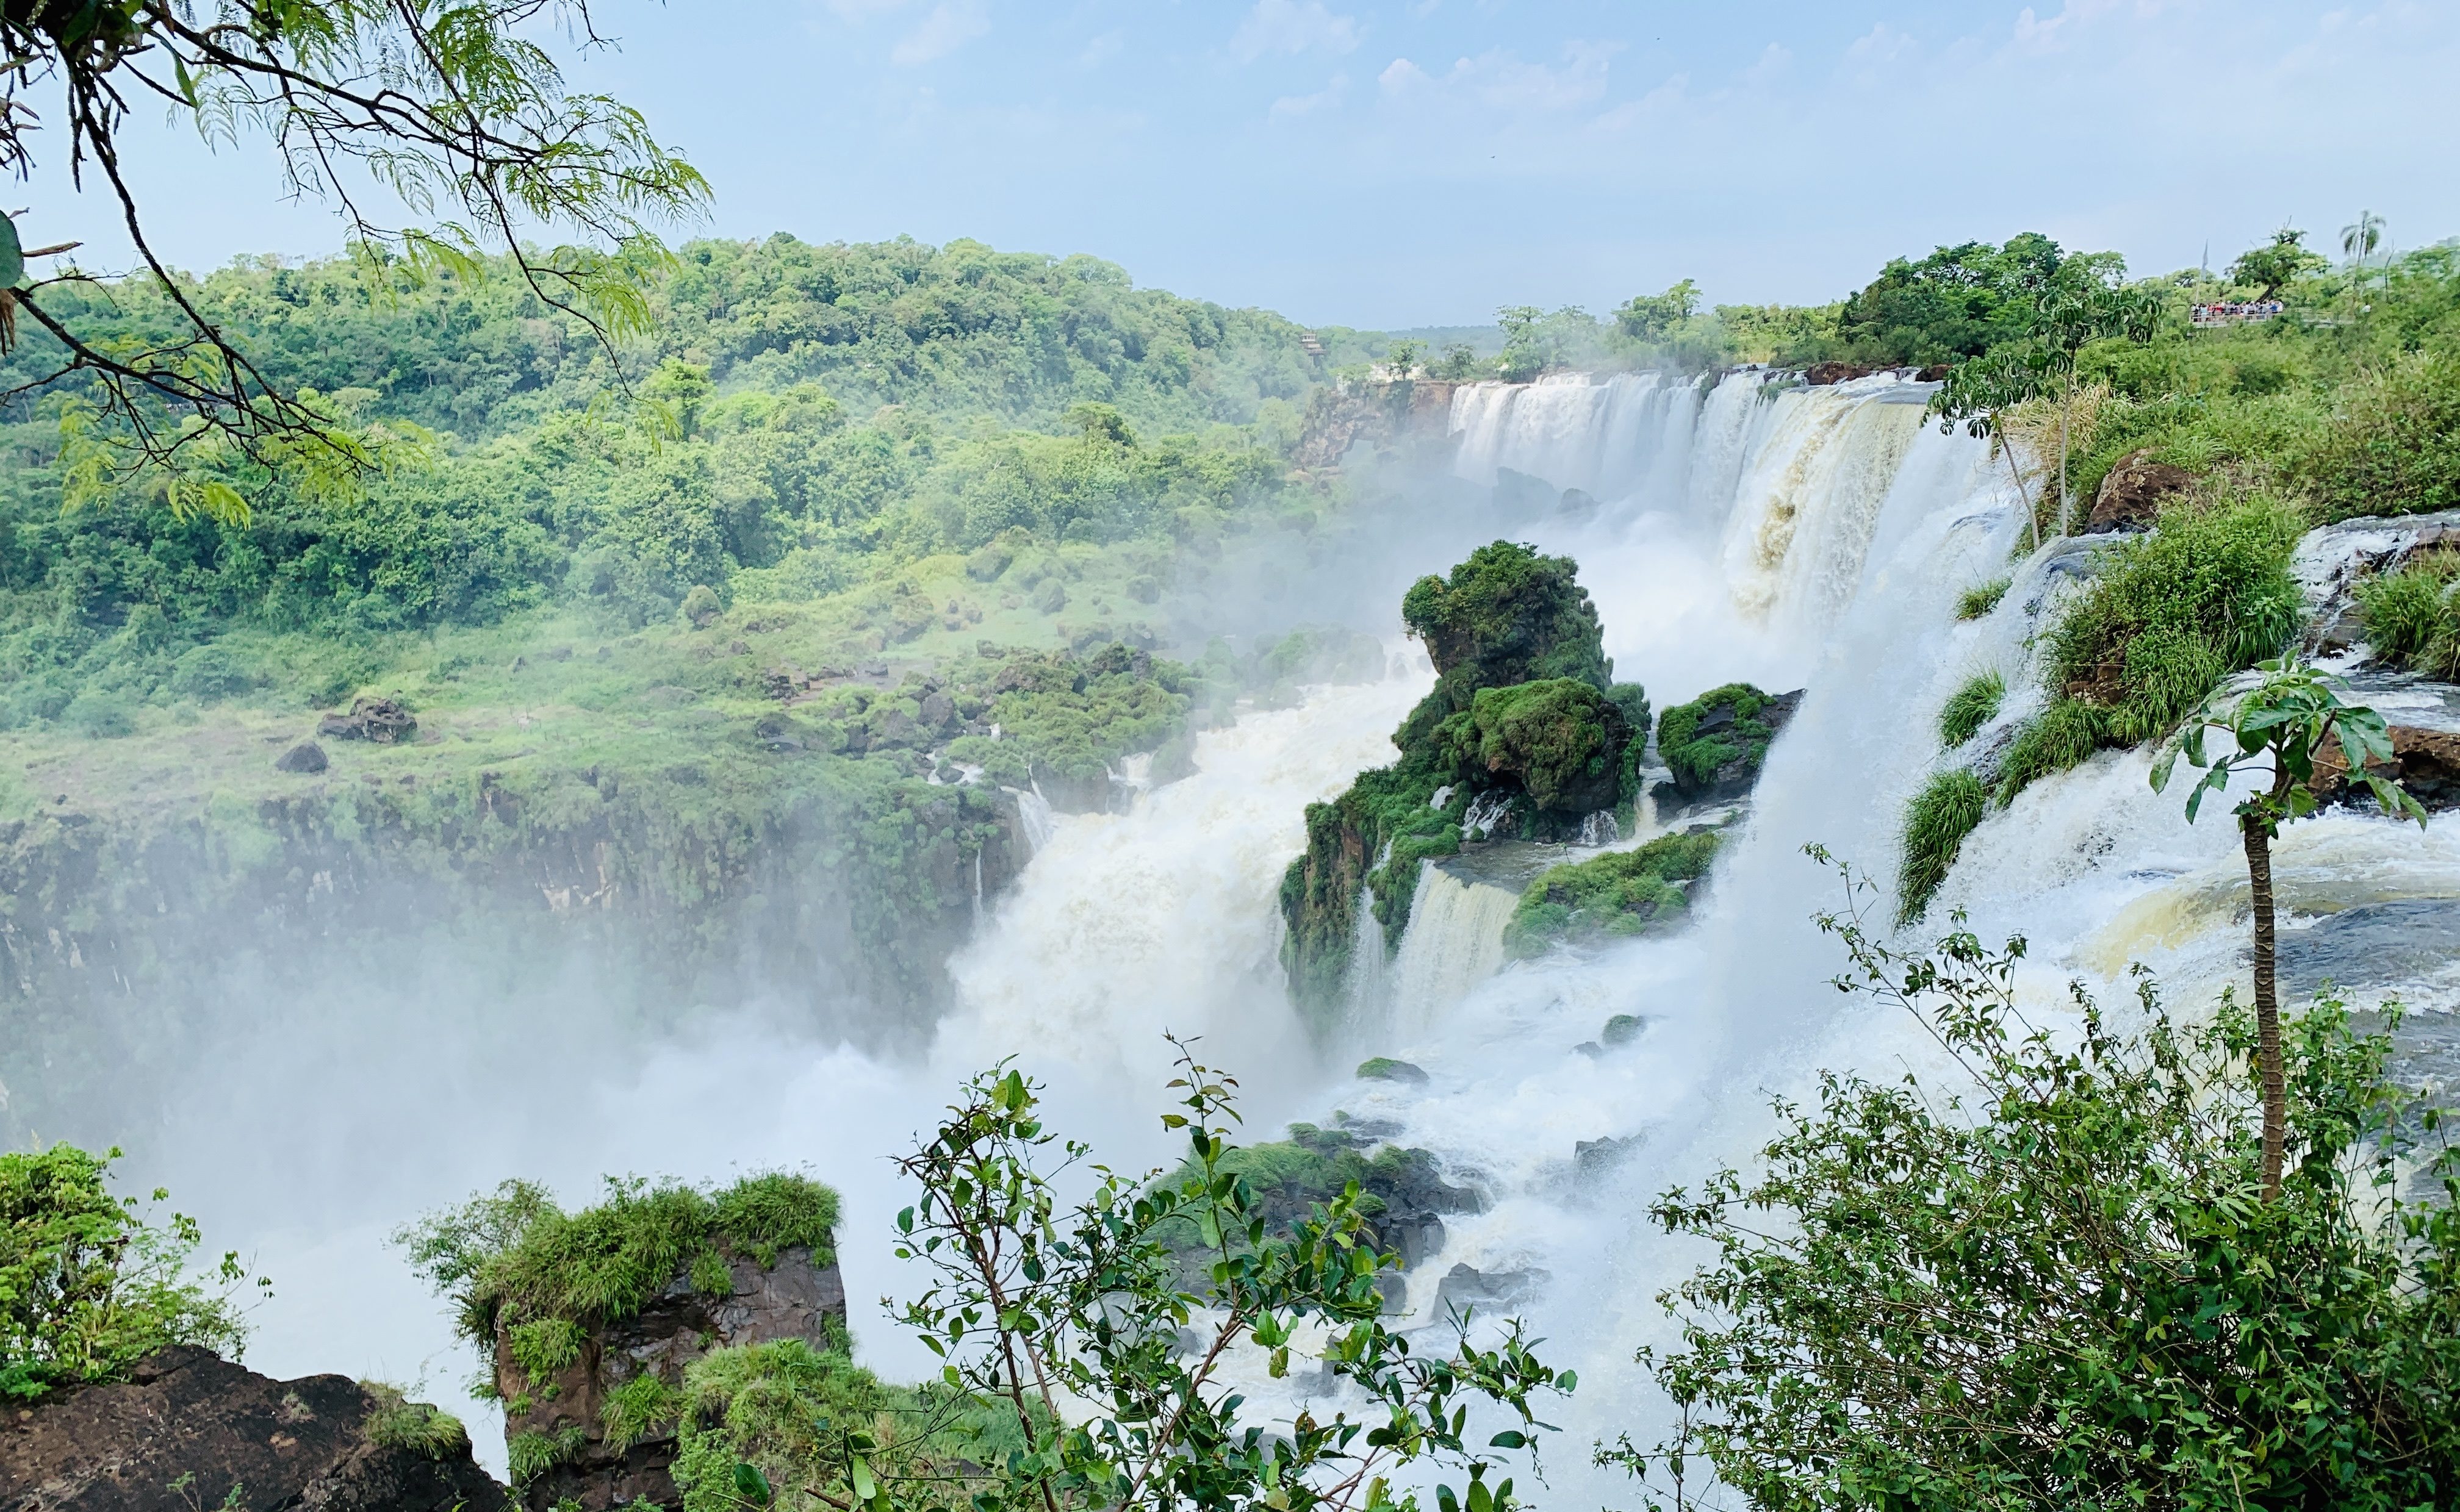 Storslagna och natursköna Iguazúfallen